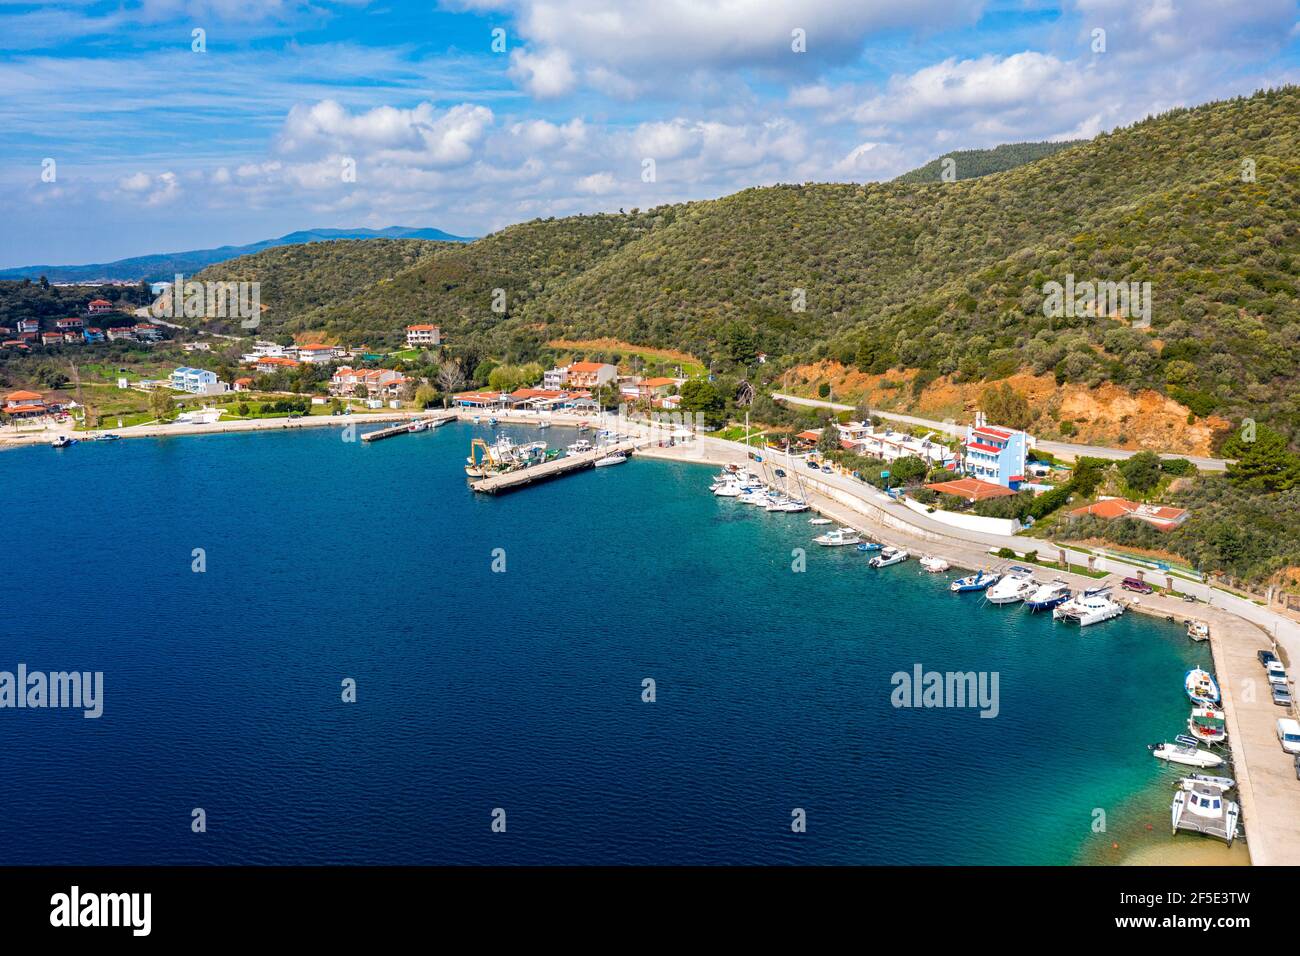 Paese di campagna europeo sulla costa mediterranea con molo costa per barche da pesca. Piccola località turistica con ville vacanze lungo la foresta verde hi Foto Stock